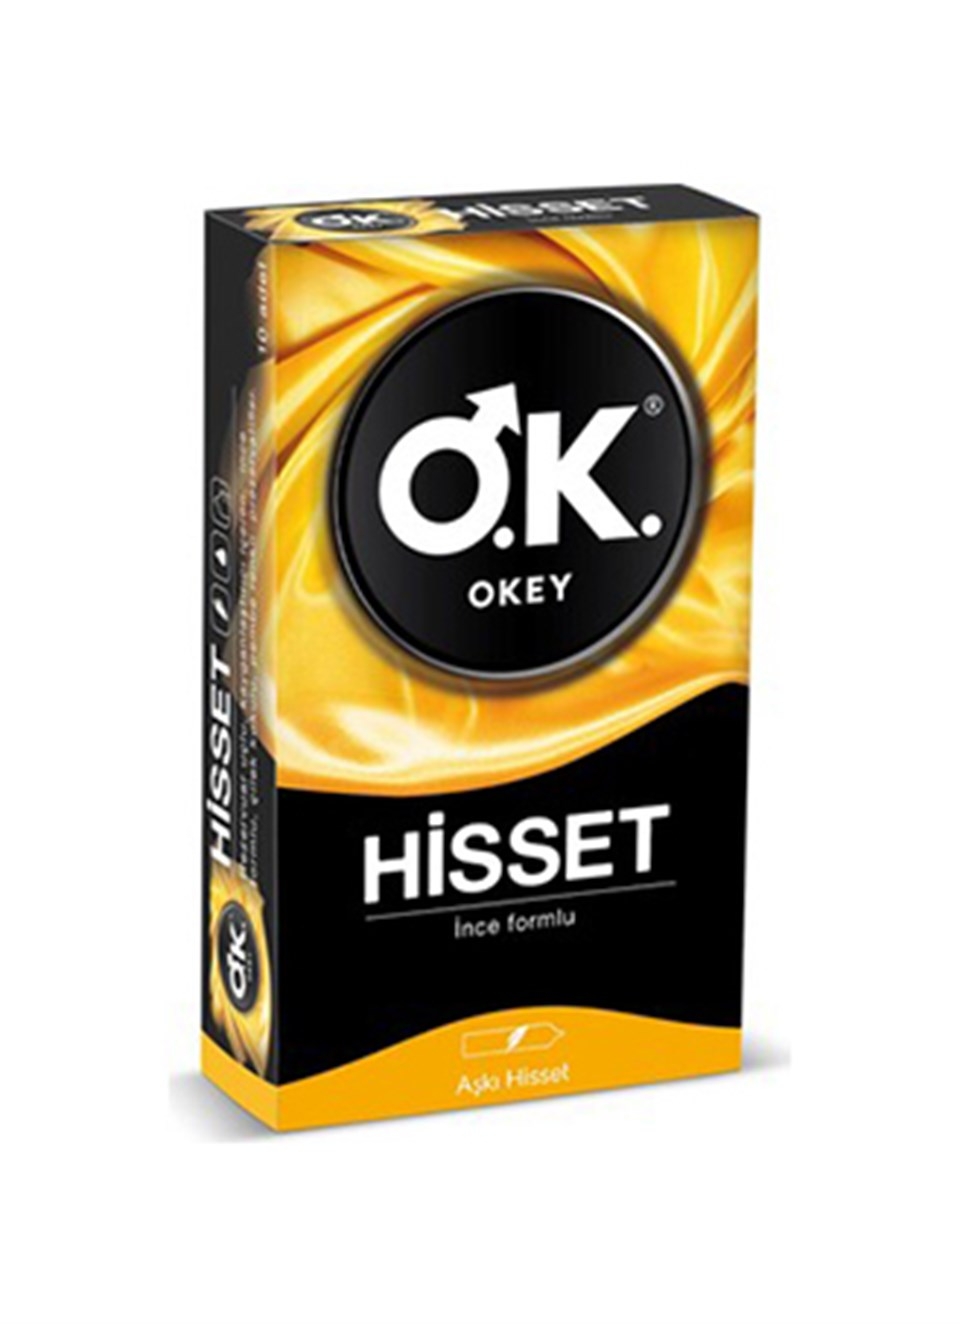 Okey Prezervatif Hisset 10lu - 1